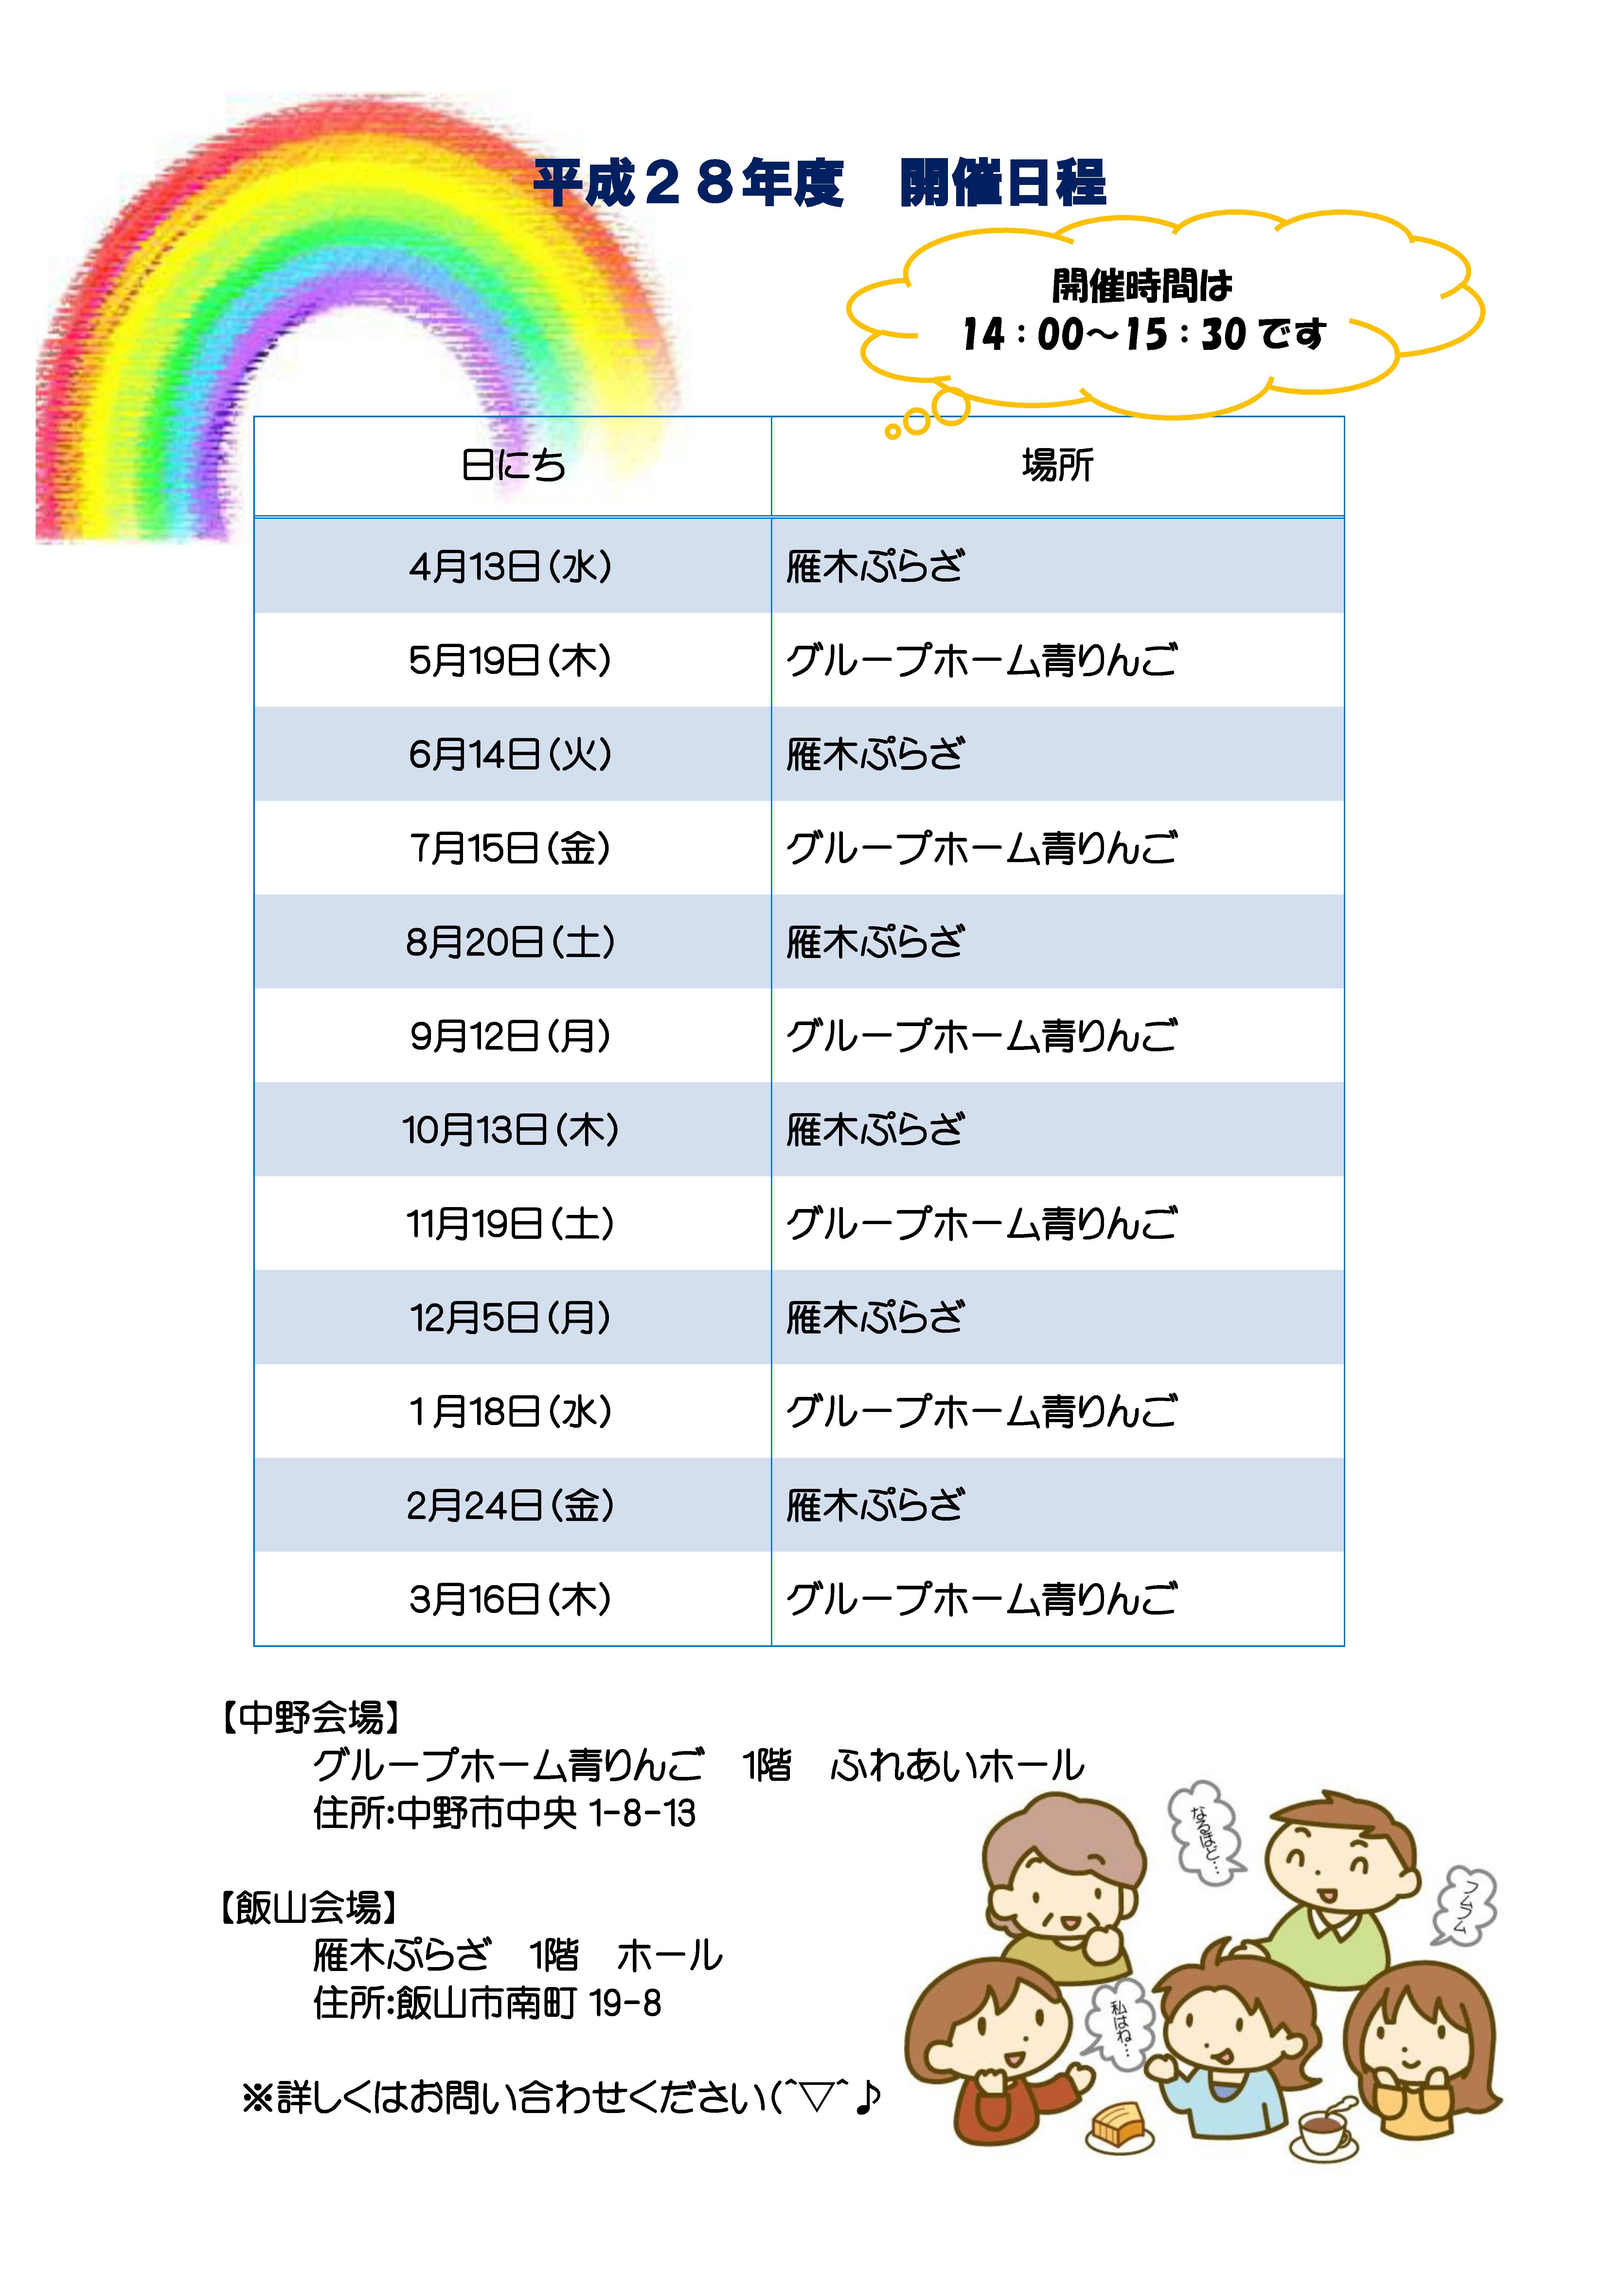 Ｈ28年度 仲間としゃべろう会 虹-2.jpgのサムネイル画像